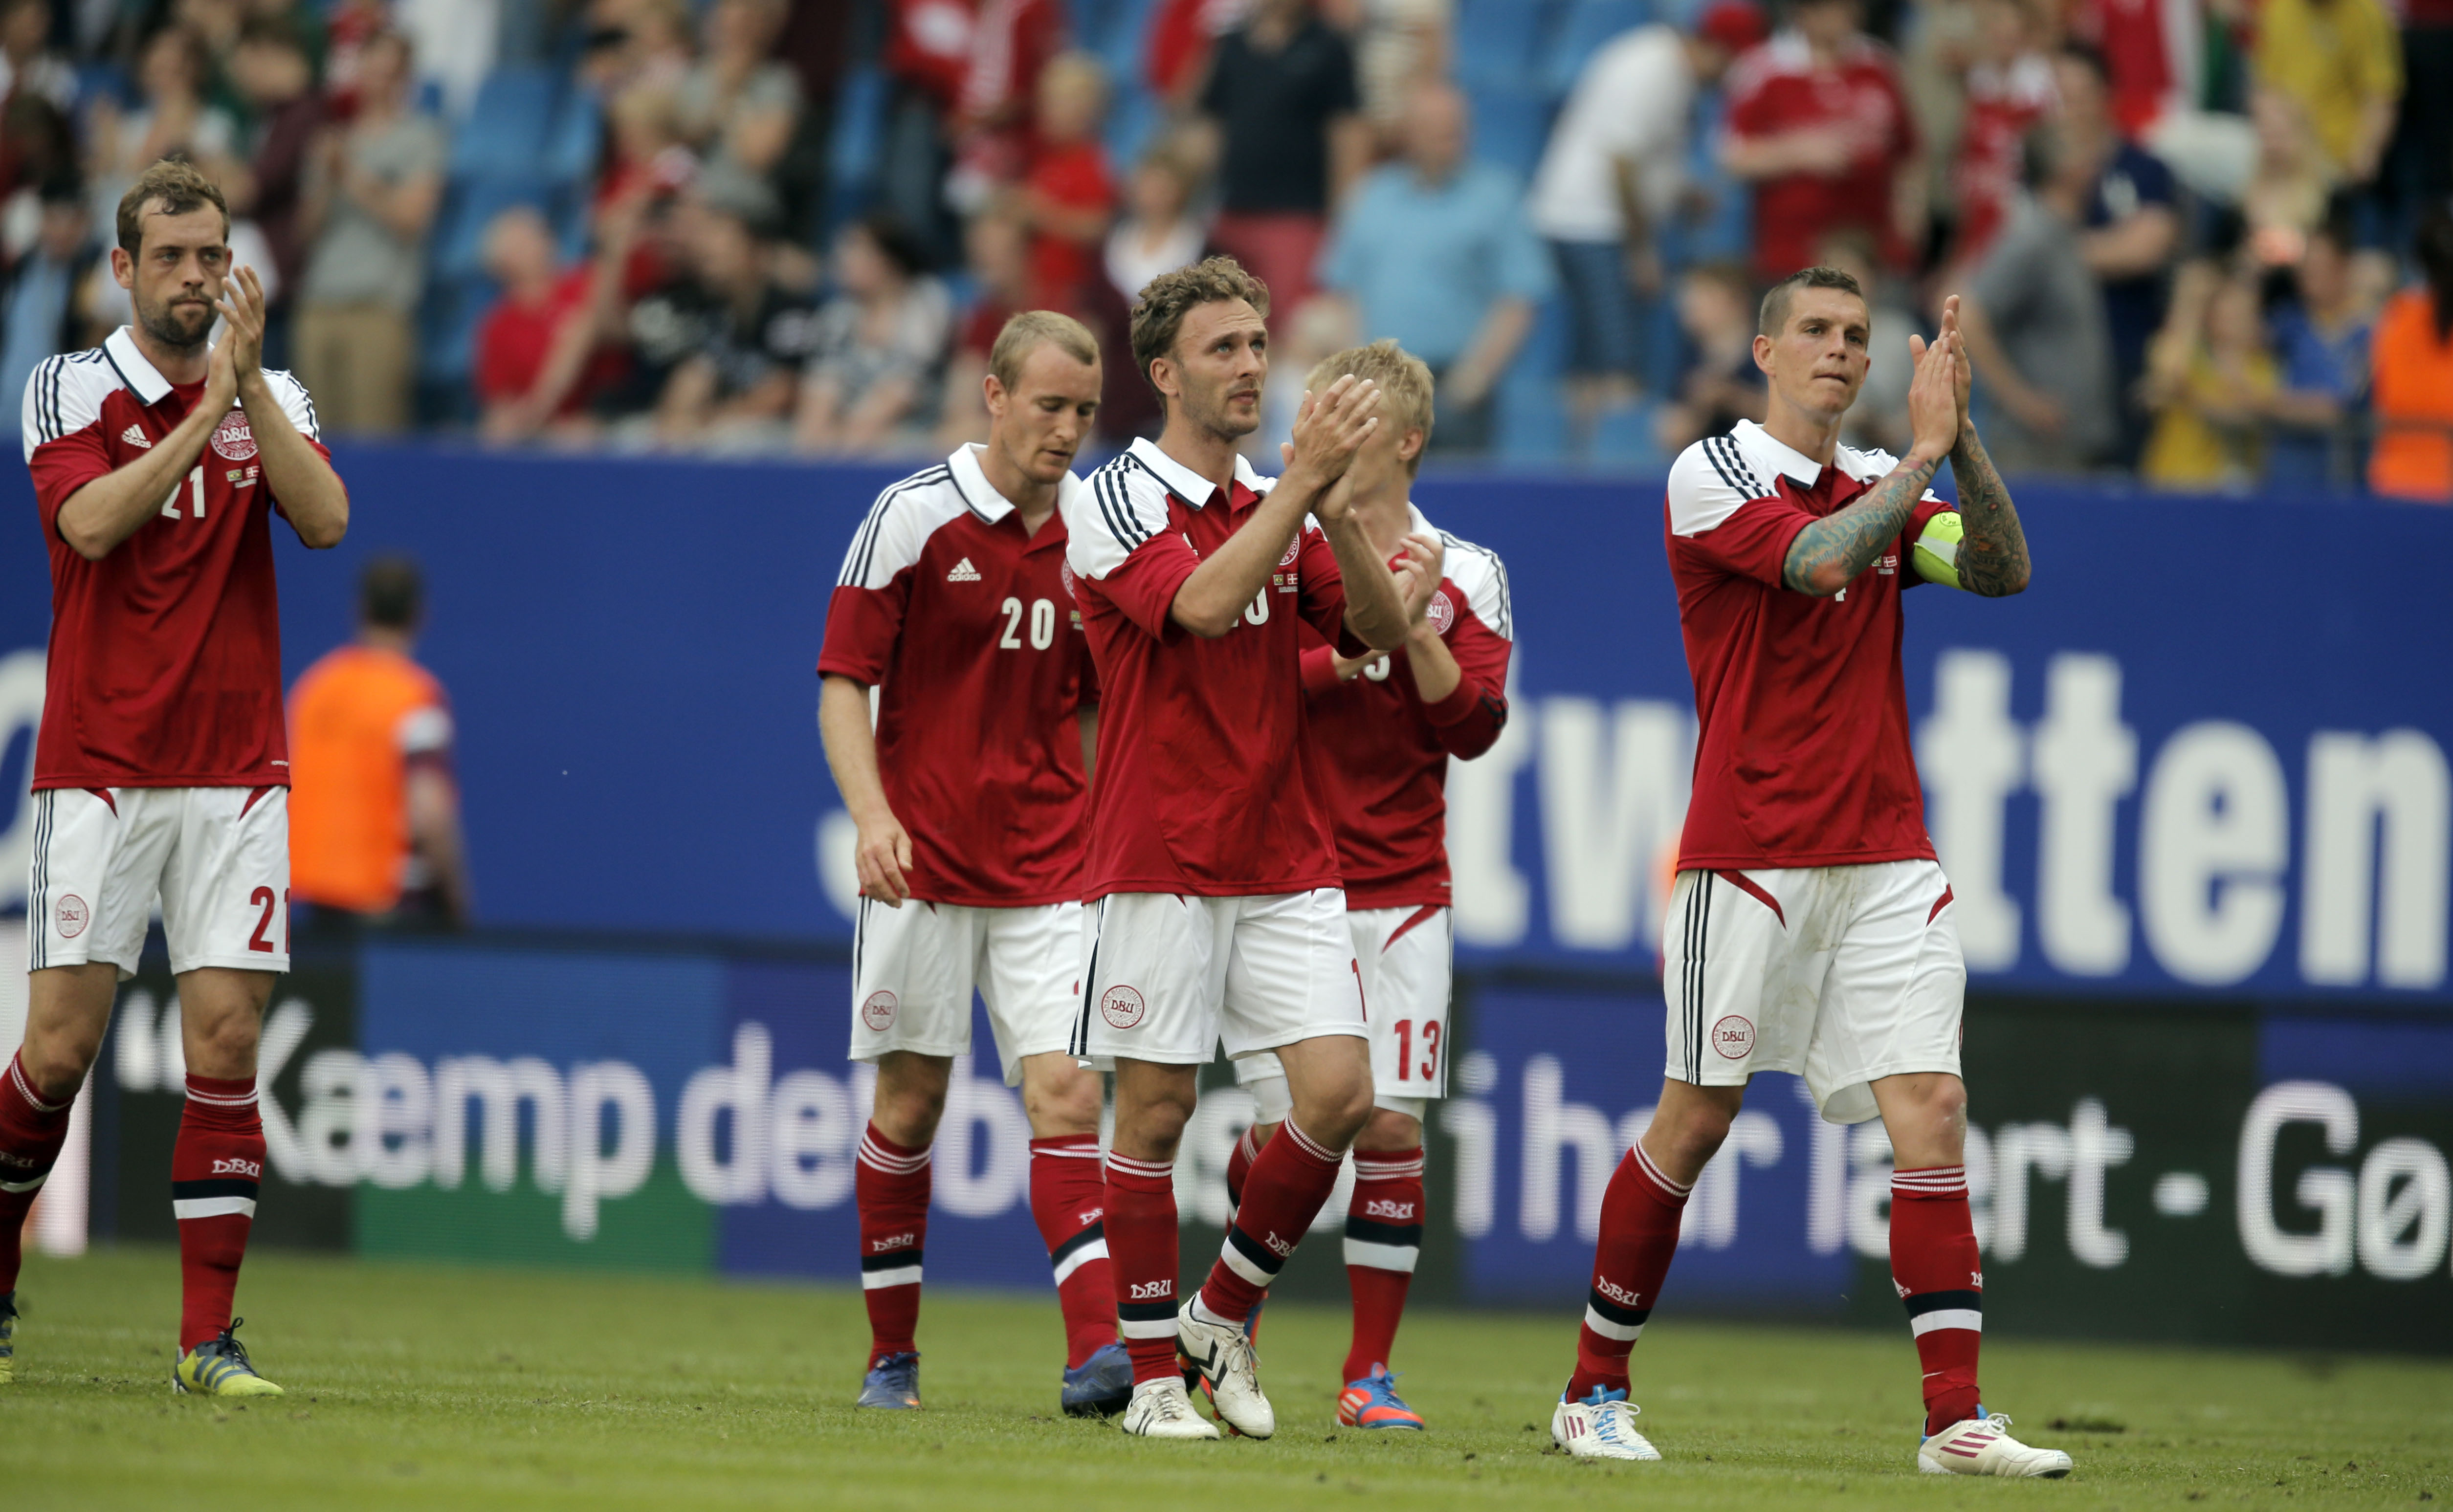 Fotbolls-EM, Fotboll, EM, Danmark, Nicklas Bendtner, Daniel Agger